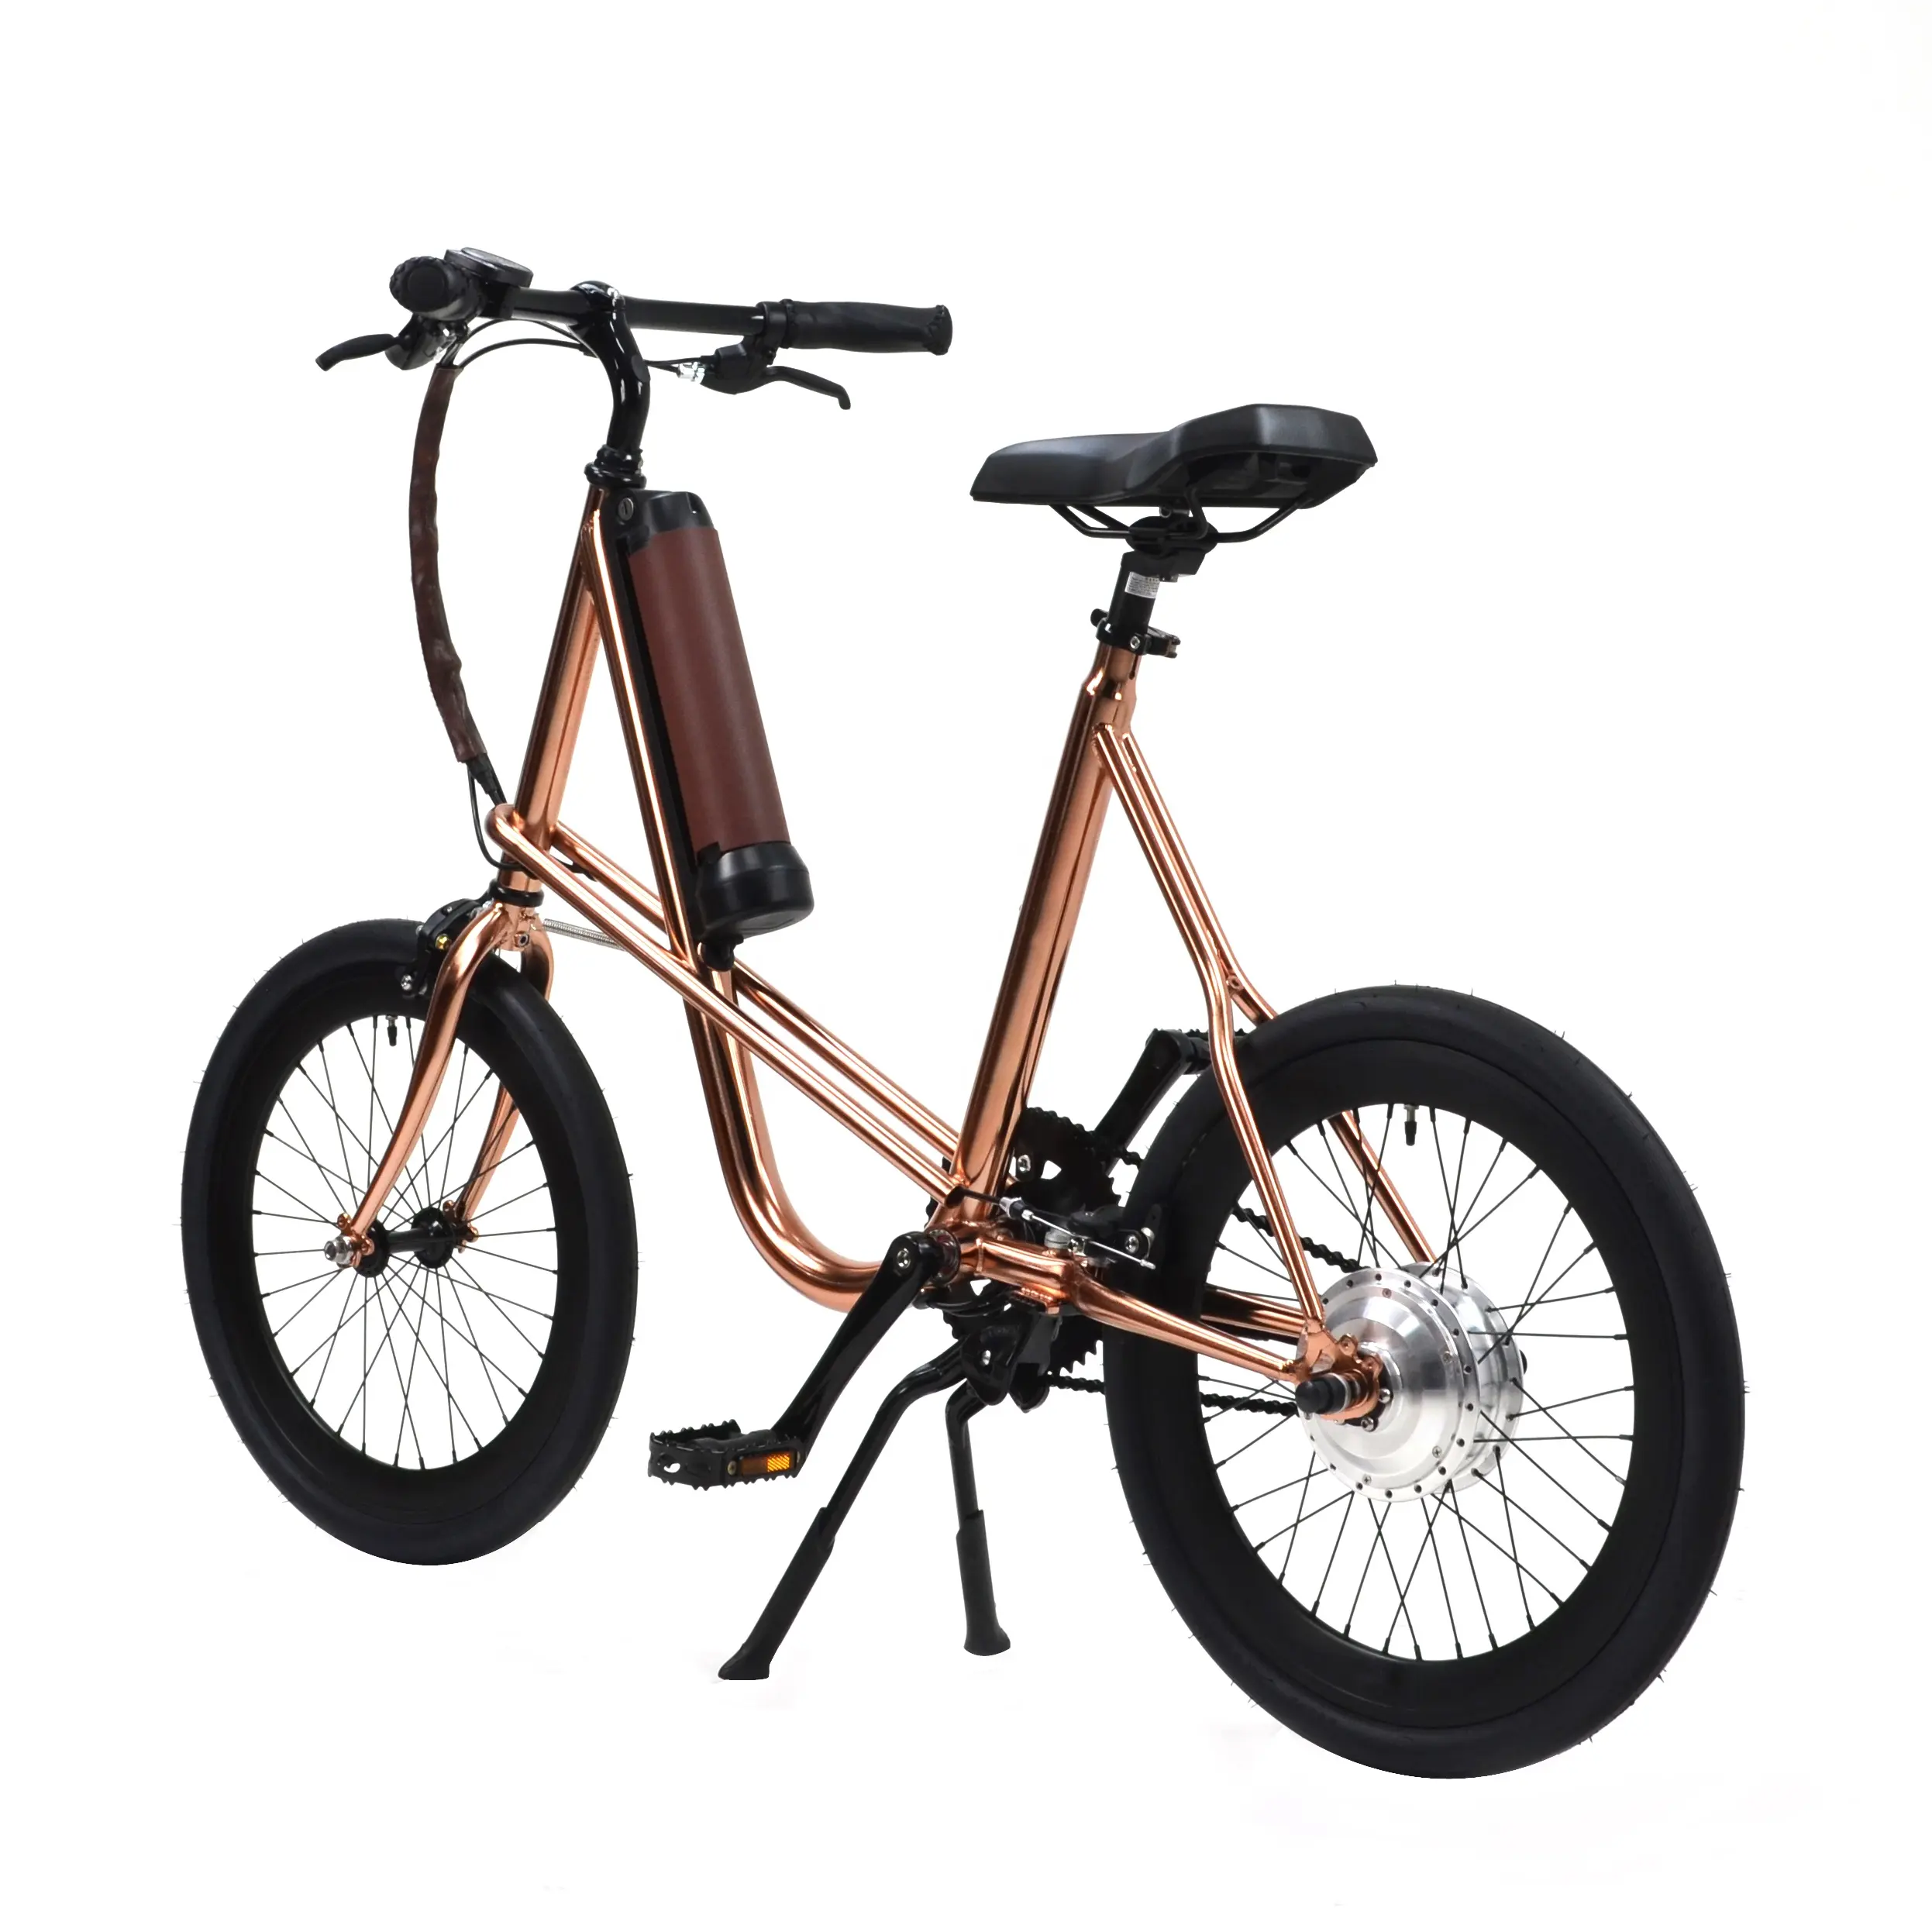 ディーラー、ディストリビューター、エージェント電動自転車e-bike pedelec SEic miniu city style EN certify